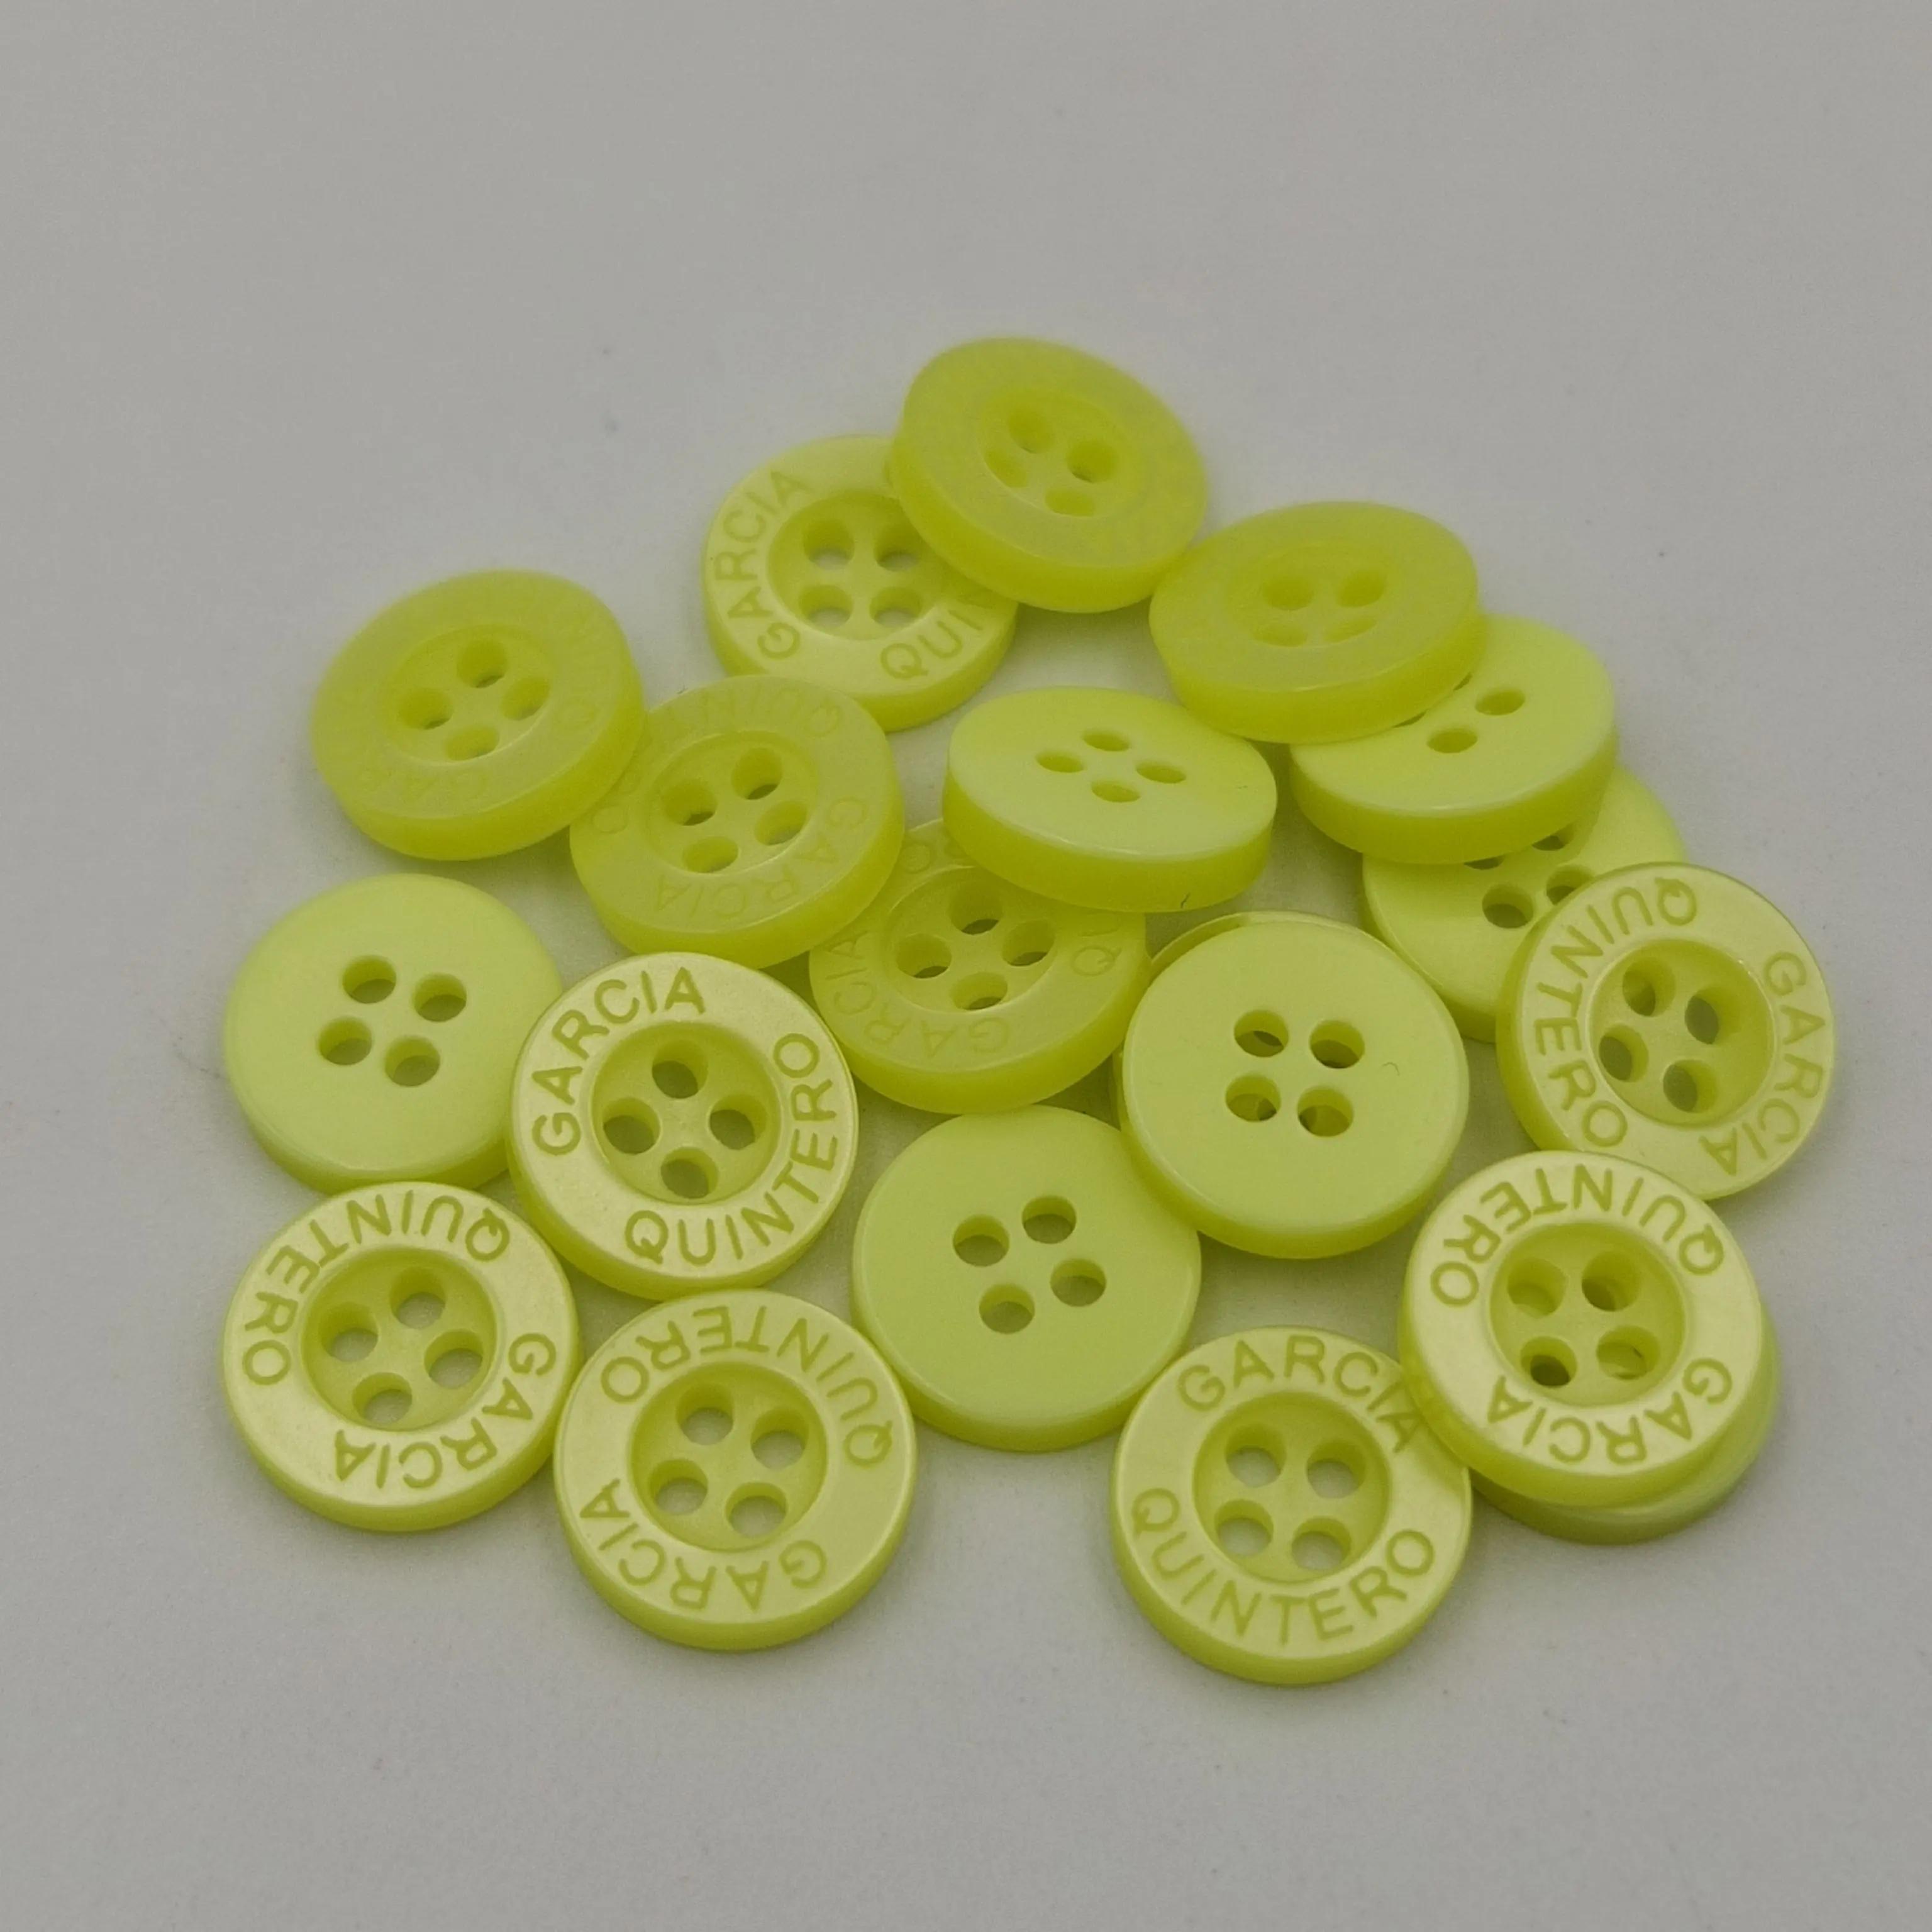 Botões de resina de 4 furos/2 furos, tamanho de aceito e personalização da cor, botões de letra